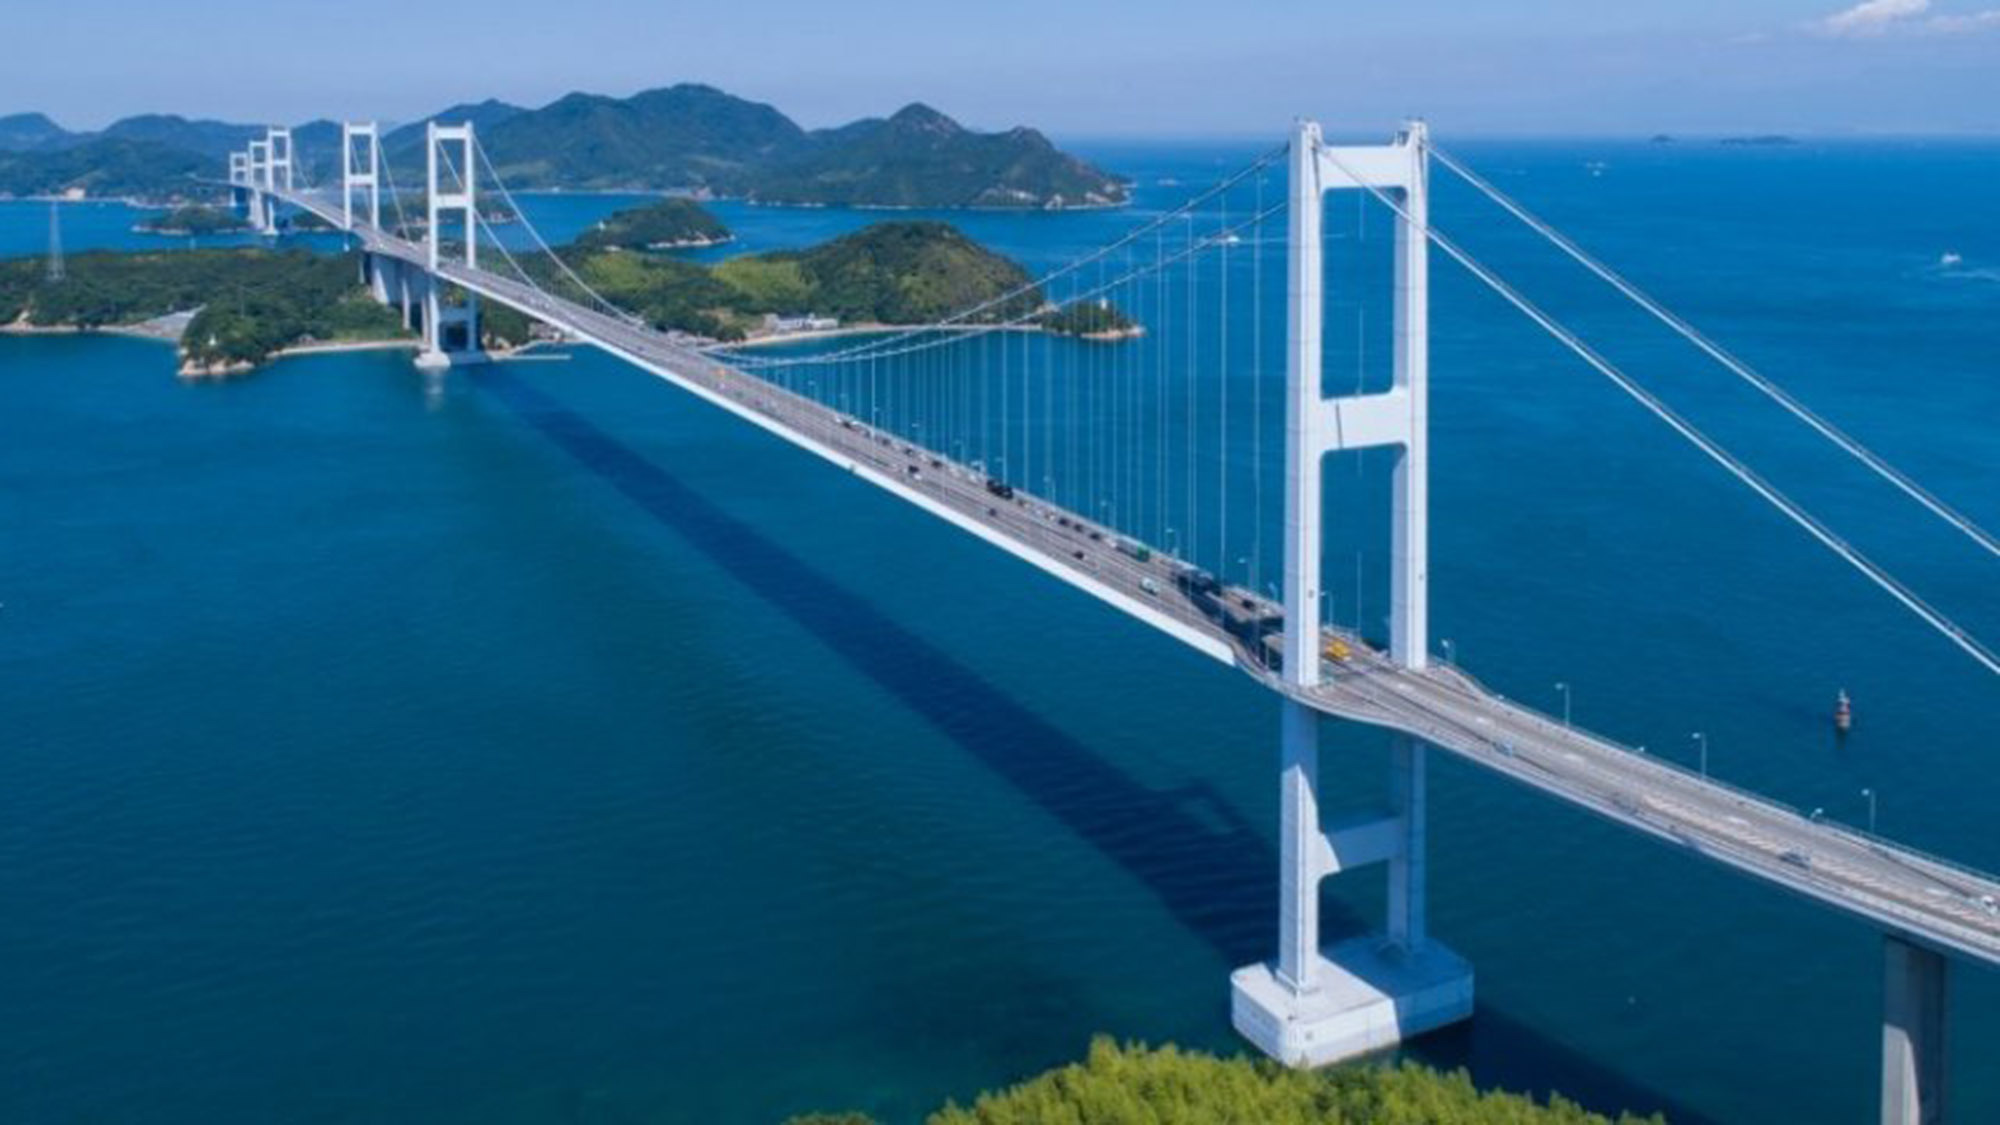 ・＜瀬戸内しまなみ海道＞７つの橋と瀬戸内海の島々をつなぐ絶景ロードです